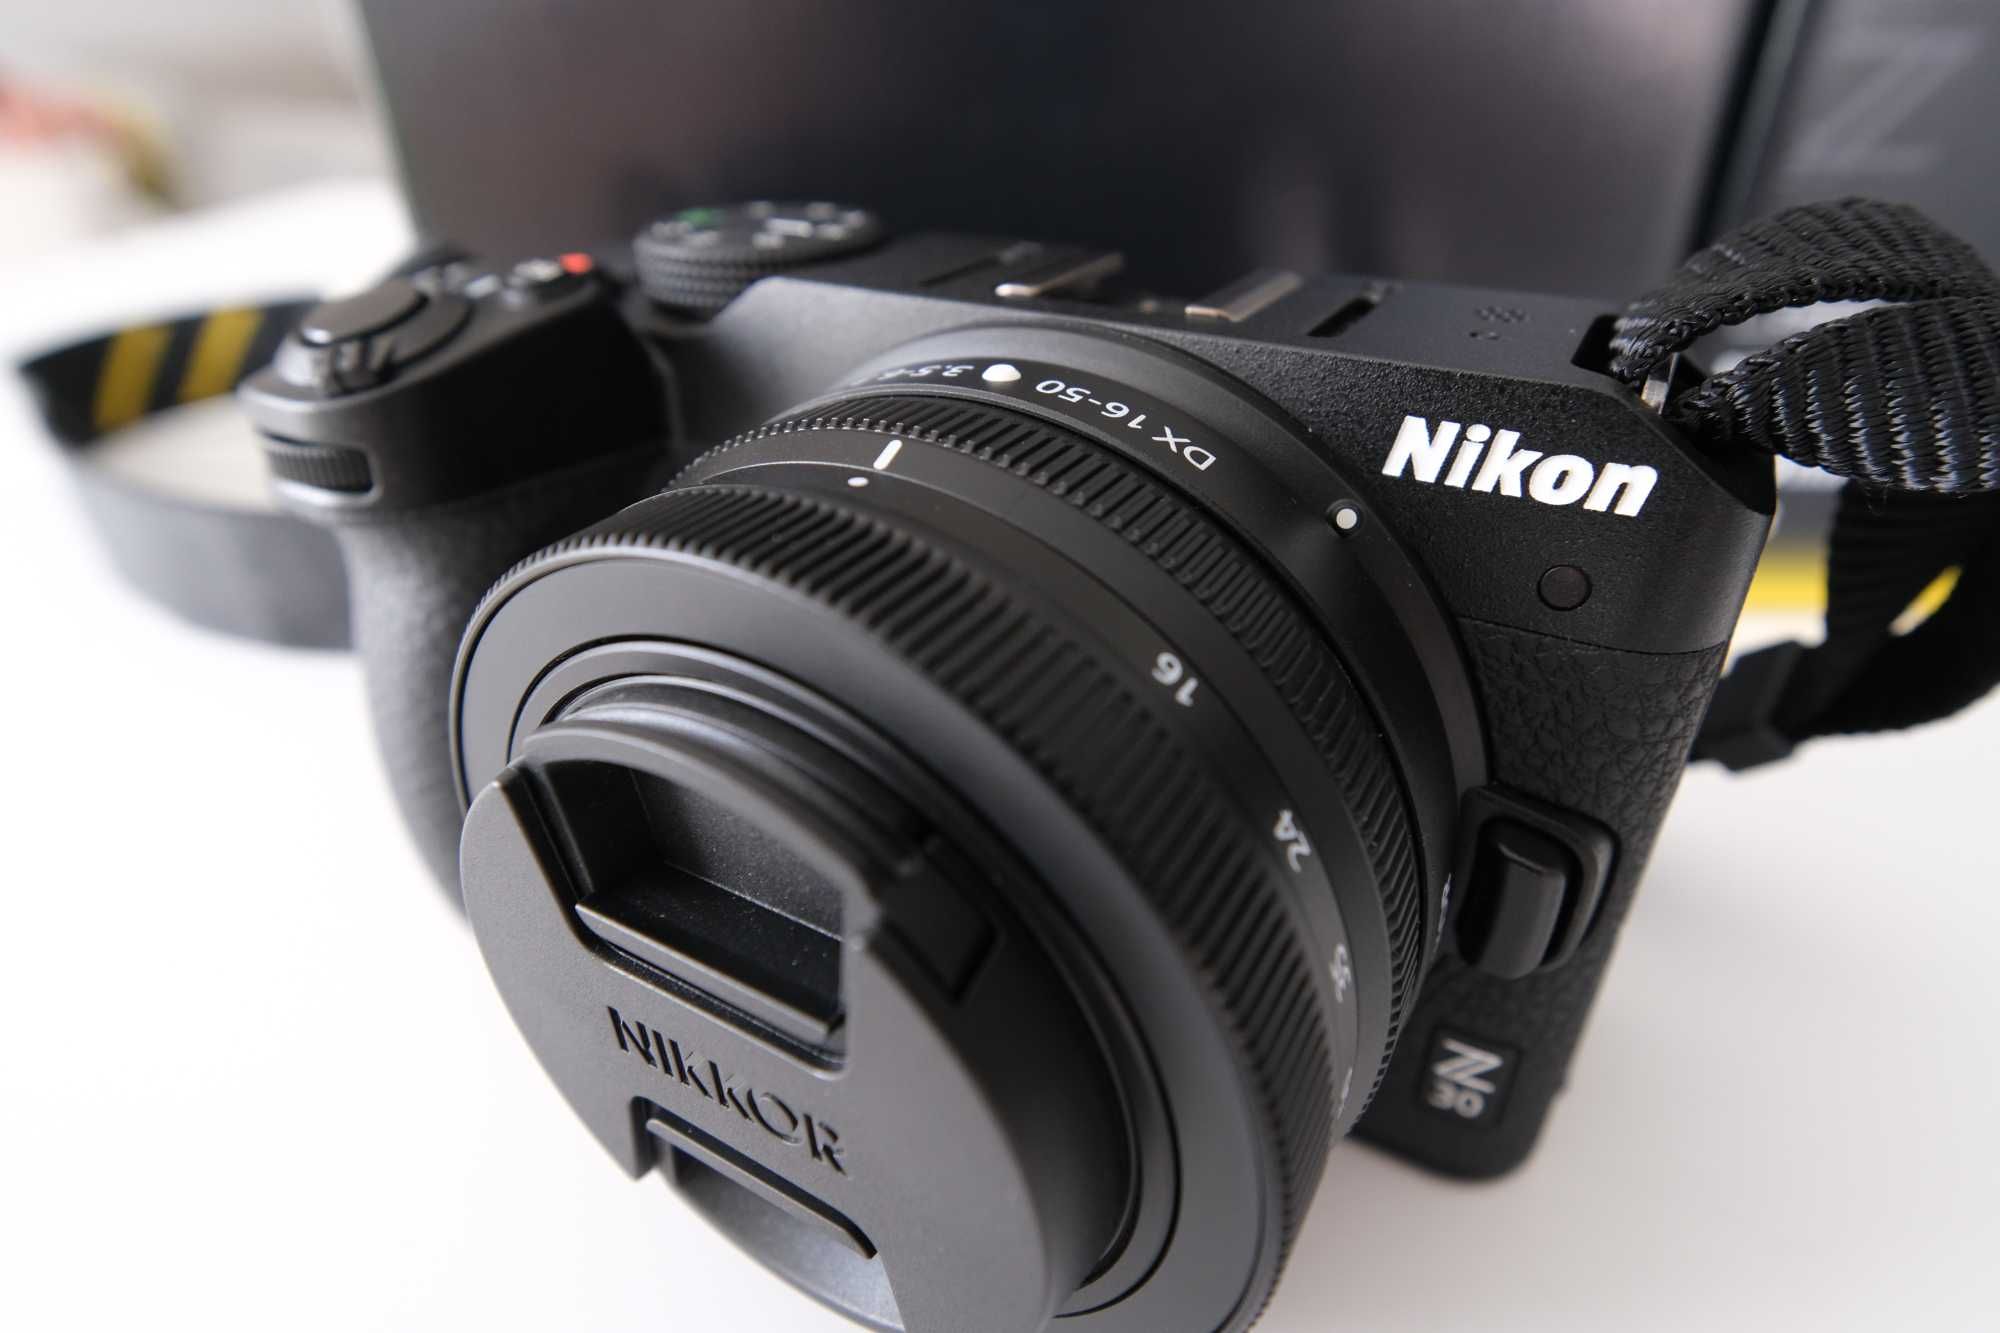 Aparat Nikon Z30 + obiektyw 16-50 F/3.5-6.3